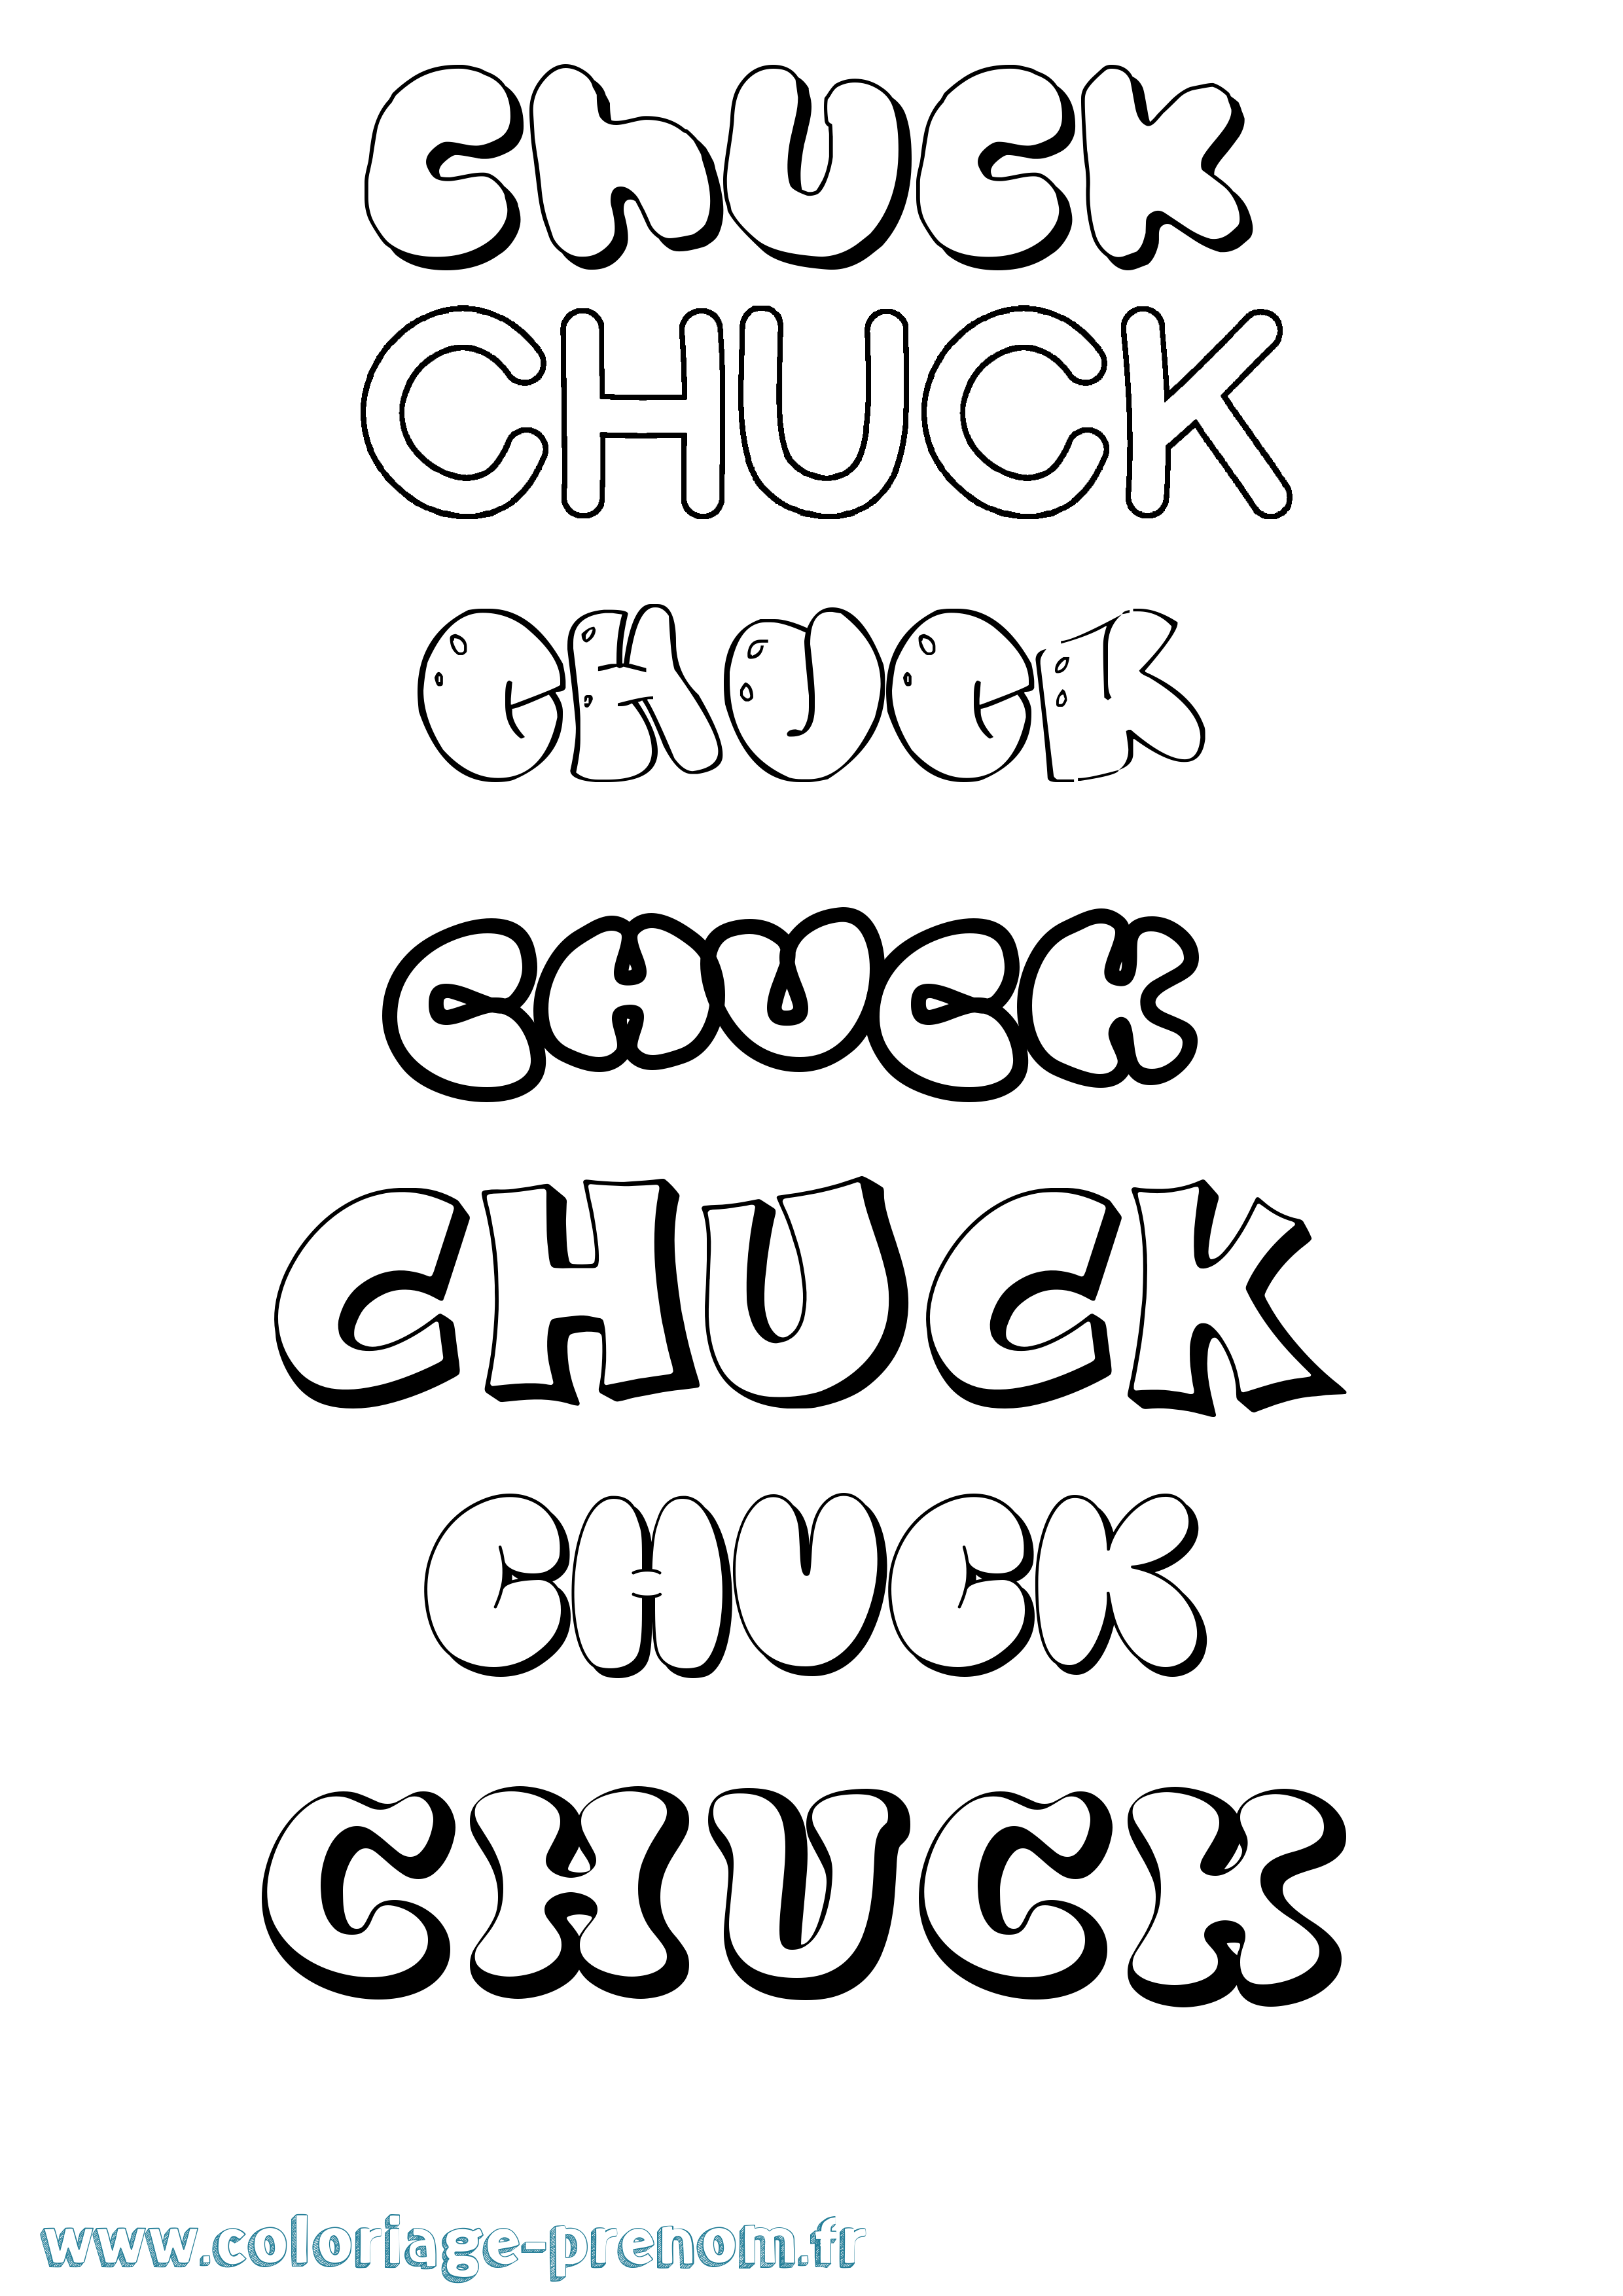 Coloriage prénom Chuck Bubble